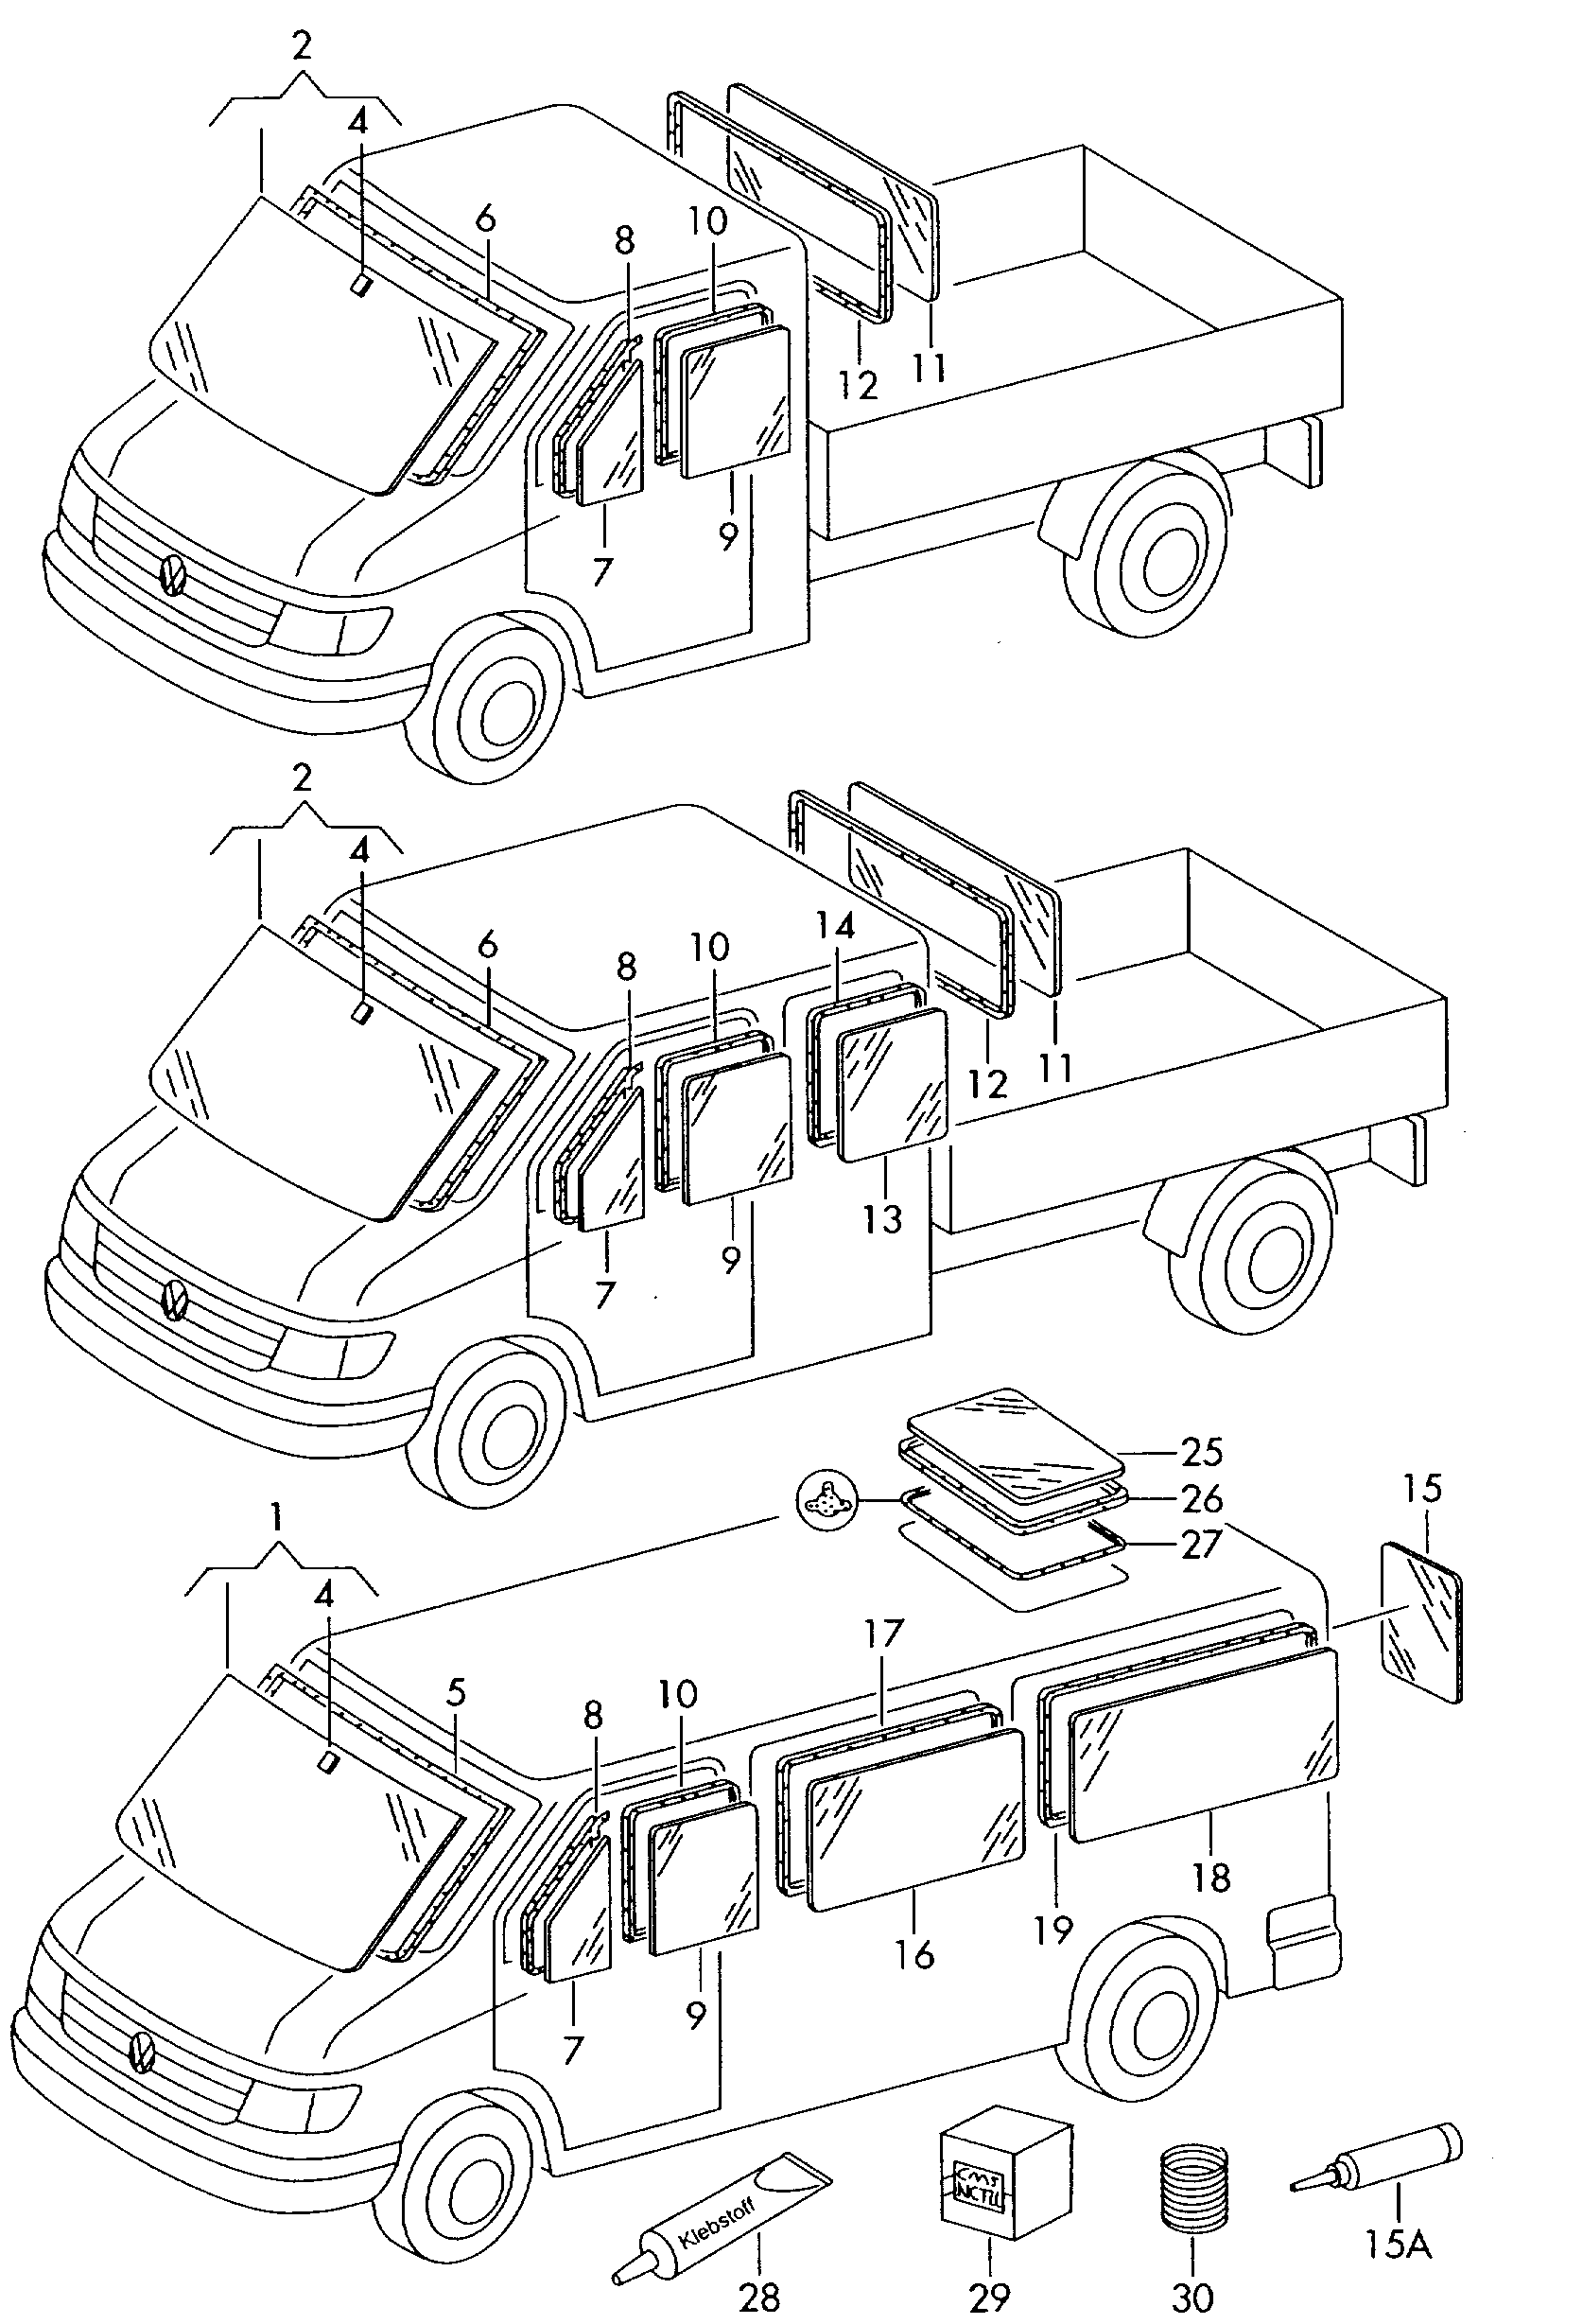 车窗玻璃及密封件; 车顶天窗 - LT, LT 4x4(LT)  